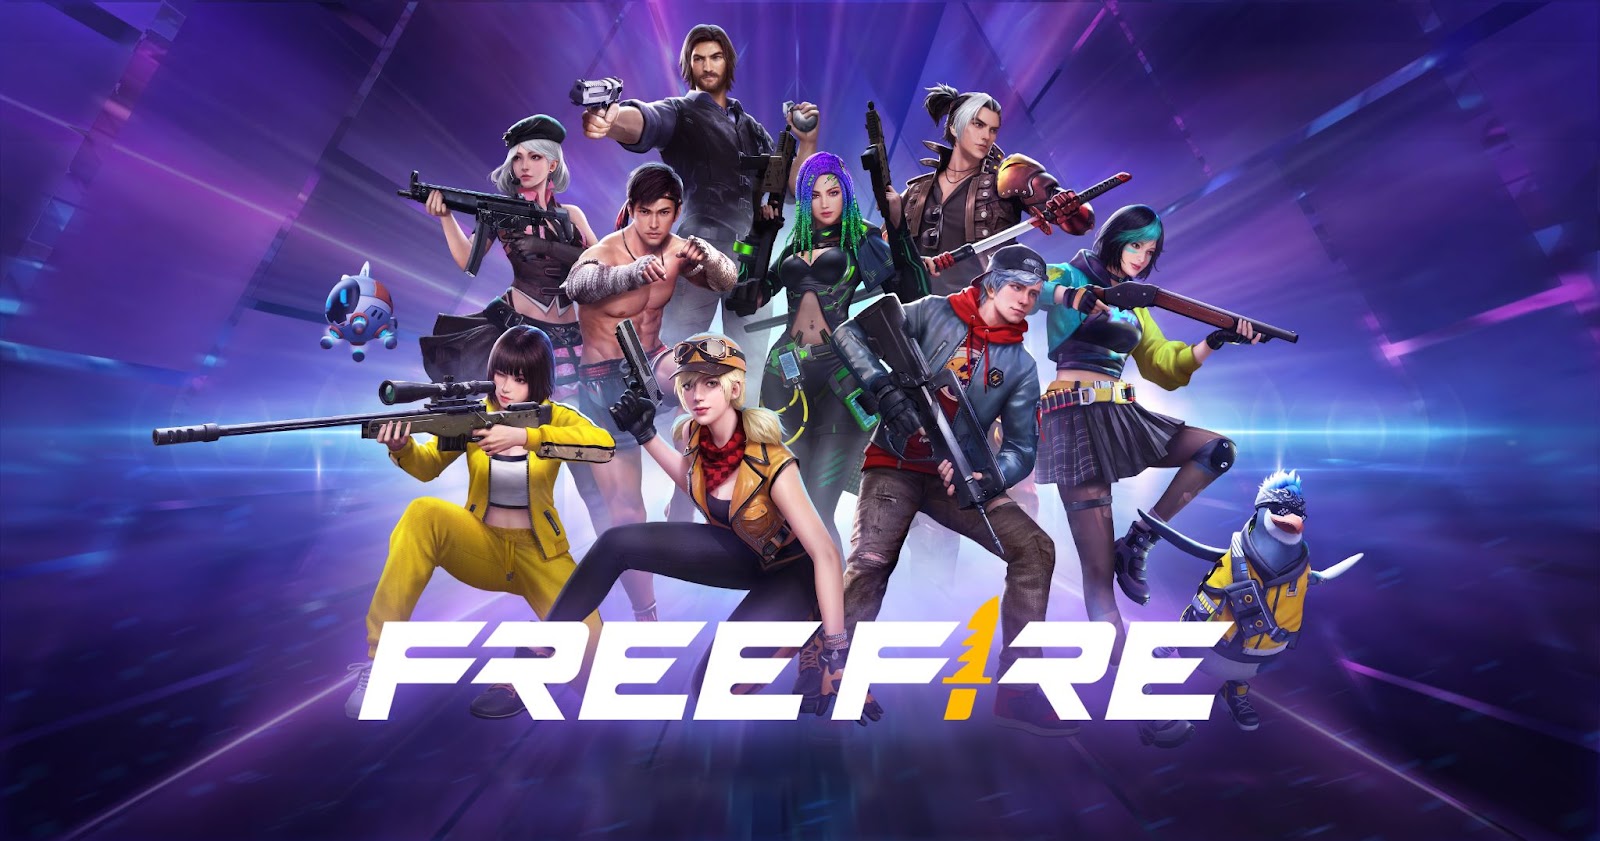 Free Fire trở thành một trong những tựa game tiên phong có cộng đồng game thủ xây trường vùng cao - Ảnh 1.